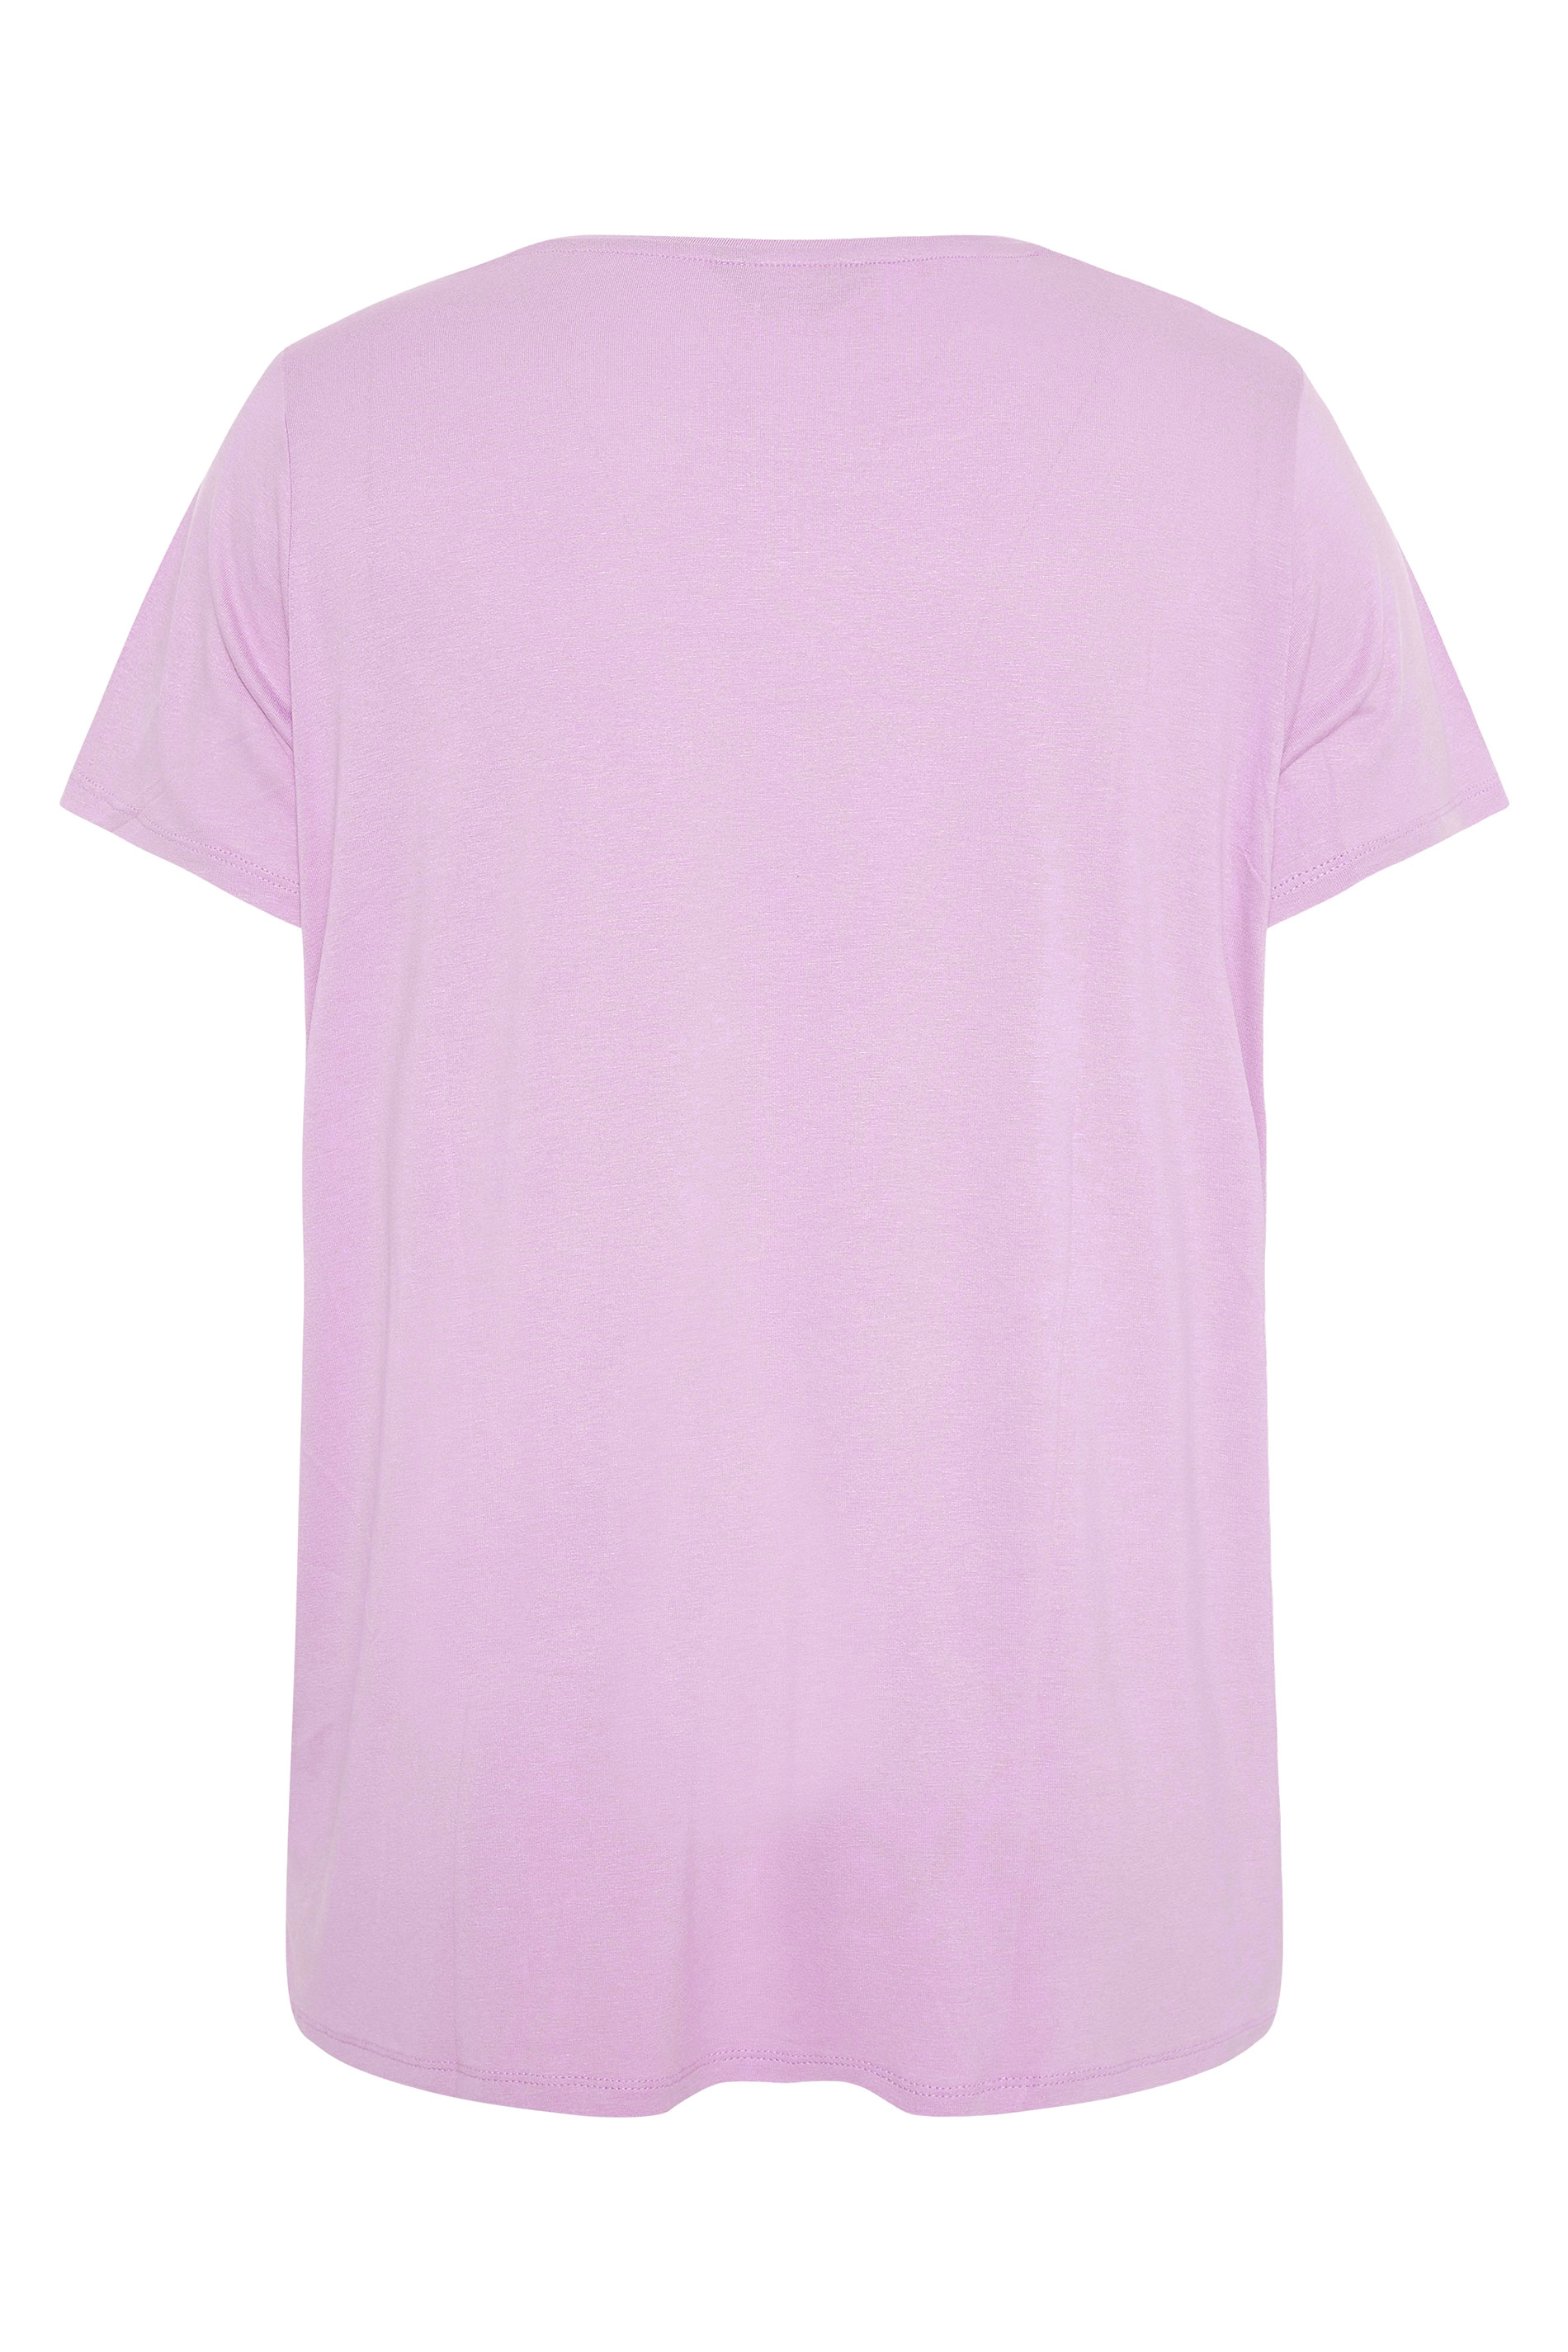 Grande taille  Tops Grande taille  T-Shirts | T-Shirt Lavande 'Love' Empiècement Sequins - QX50479